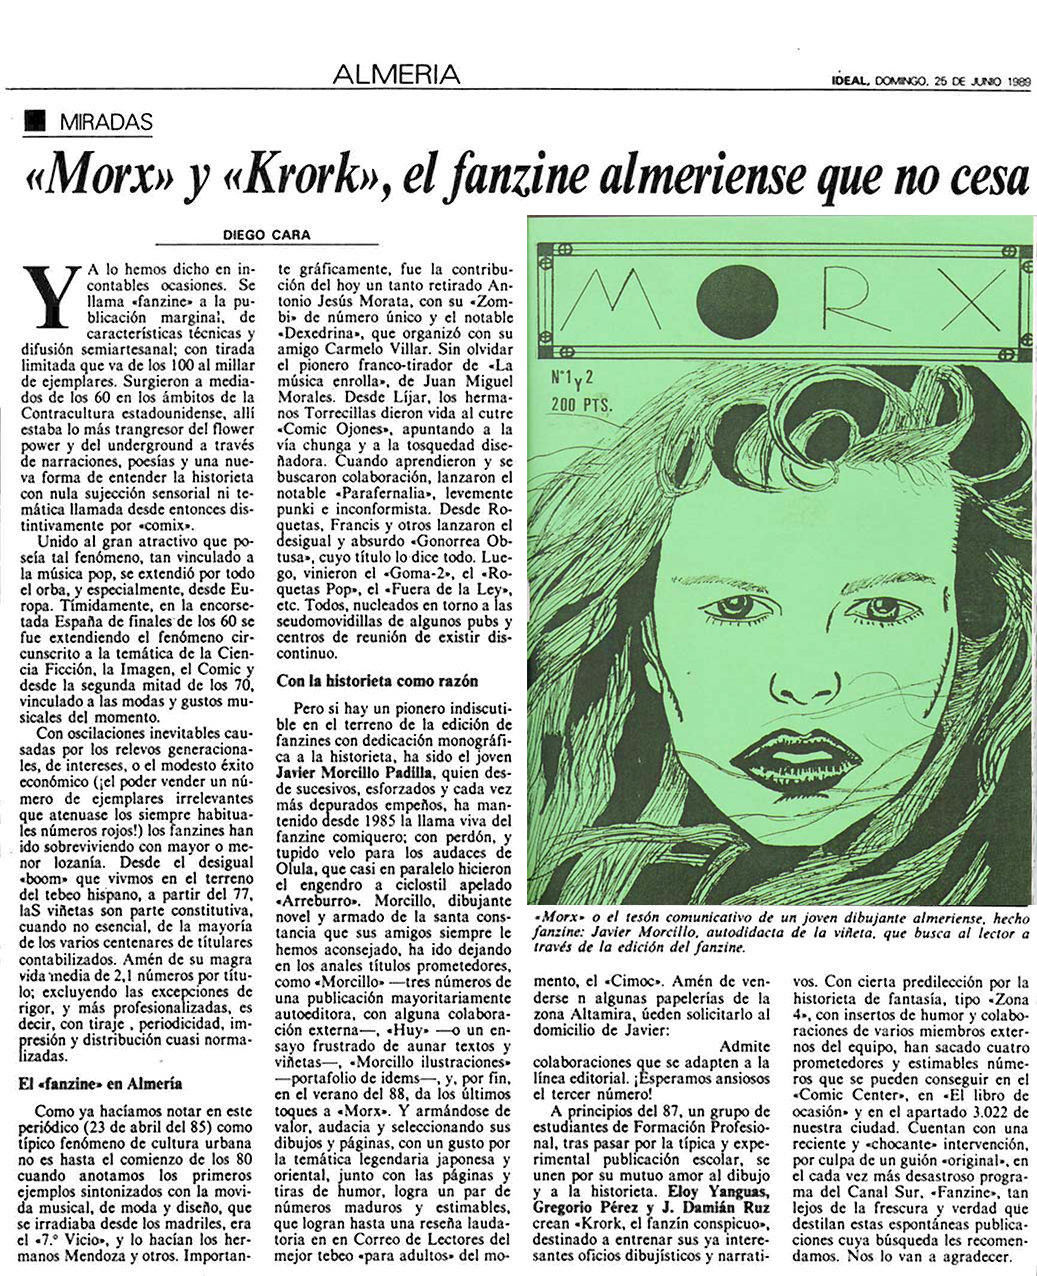 Artículo de Ideal sobre el comic en Almería.